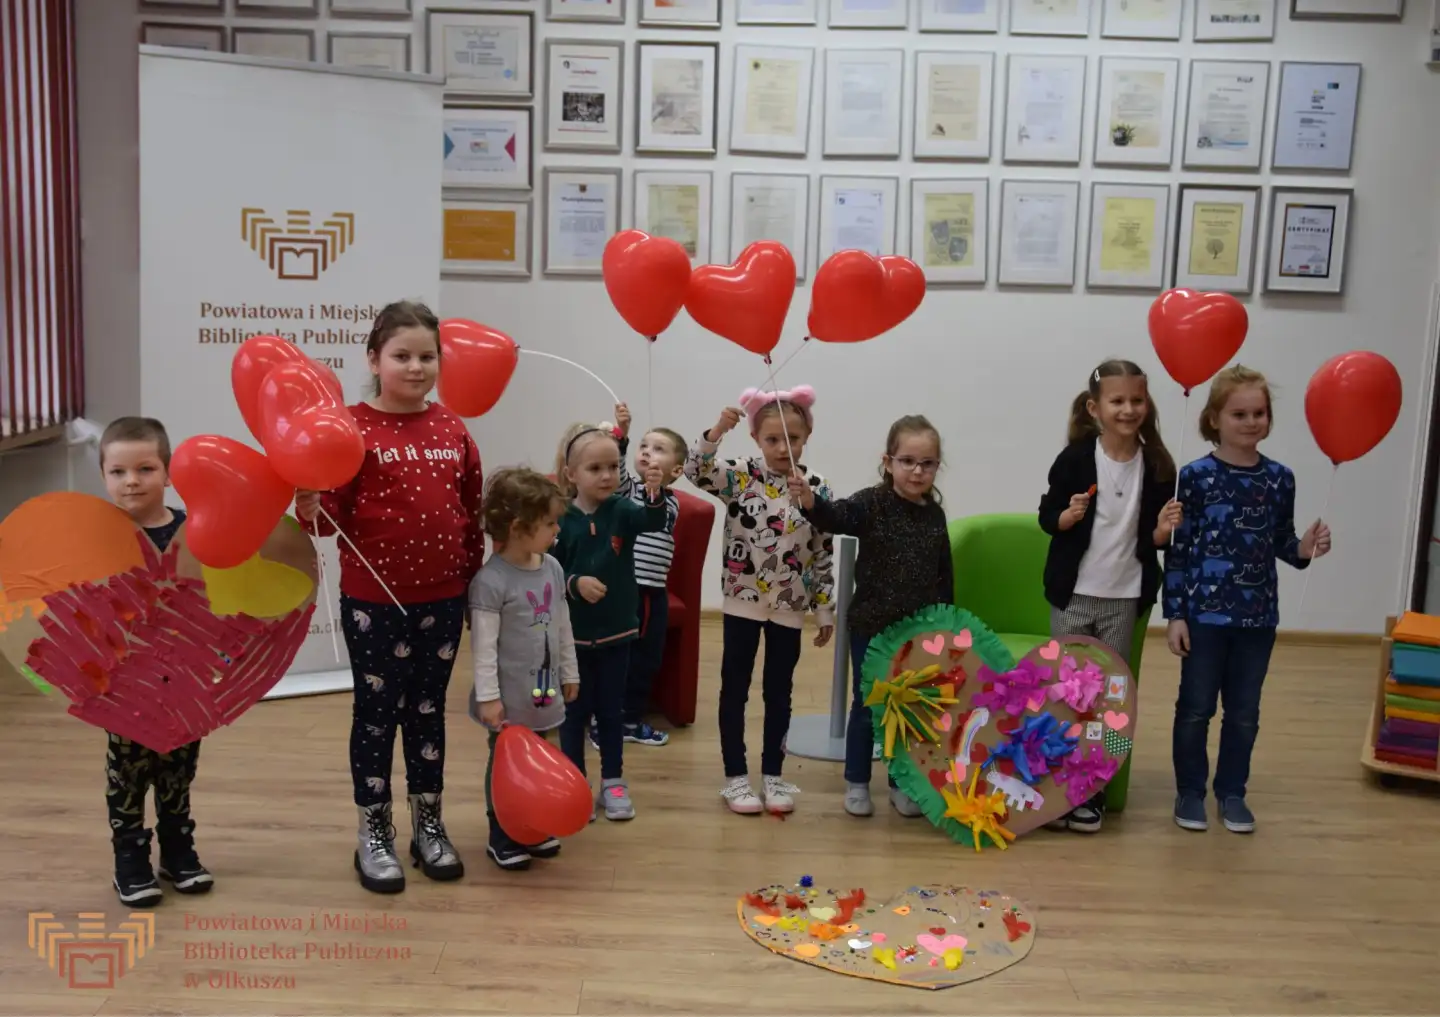 Grupa dzieci stojąca i pozująca do wspólnego zdjęcia. W rękach trzymają baloniki - czerwone serduszka. Obok nich leżą pieknie ozdobione serca z kartonów.